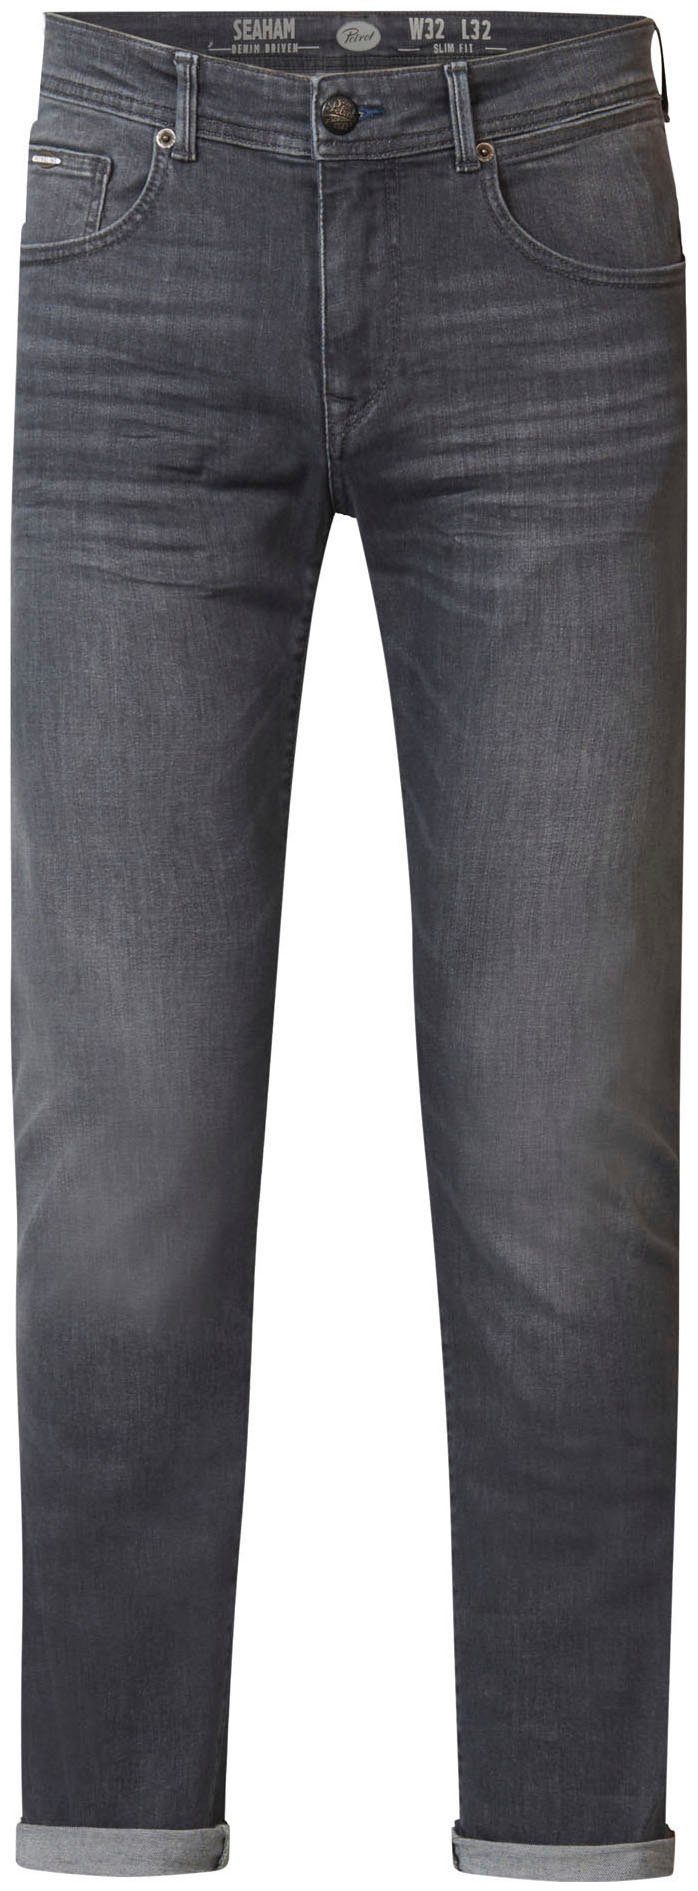 Petrol Industries slim fit jeans SEAHAM blue grey